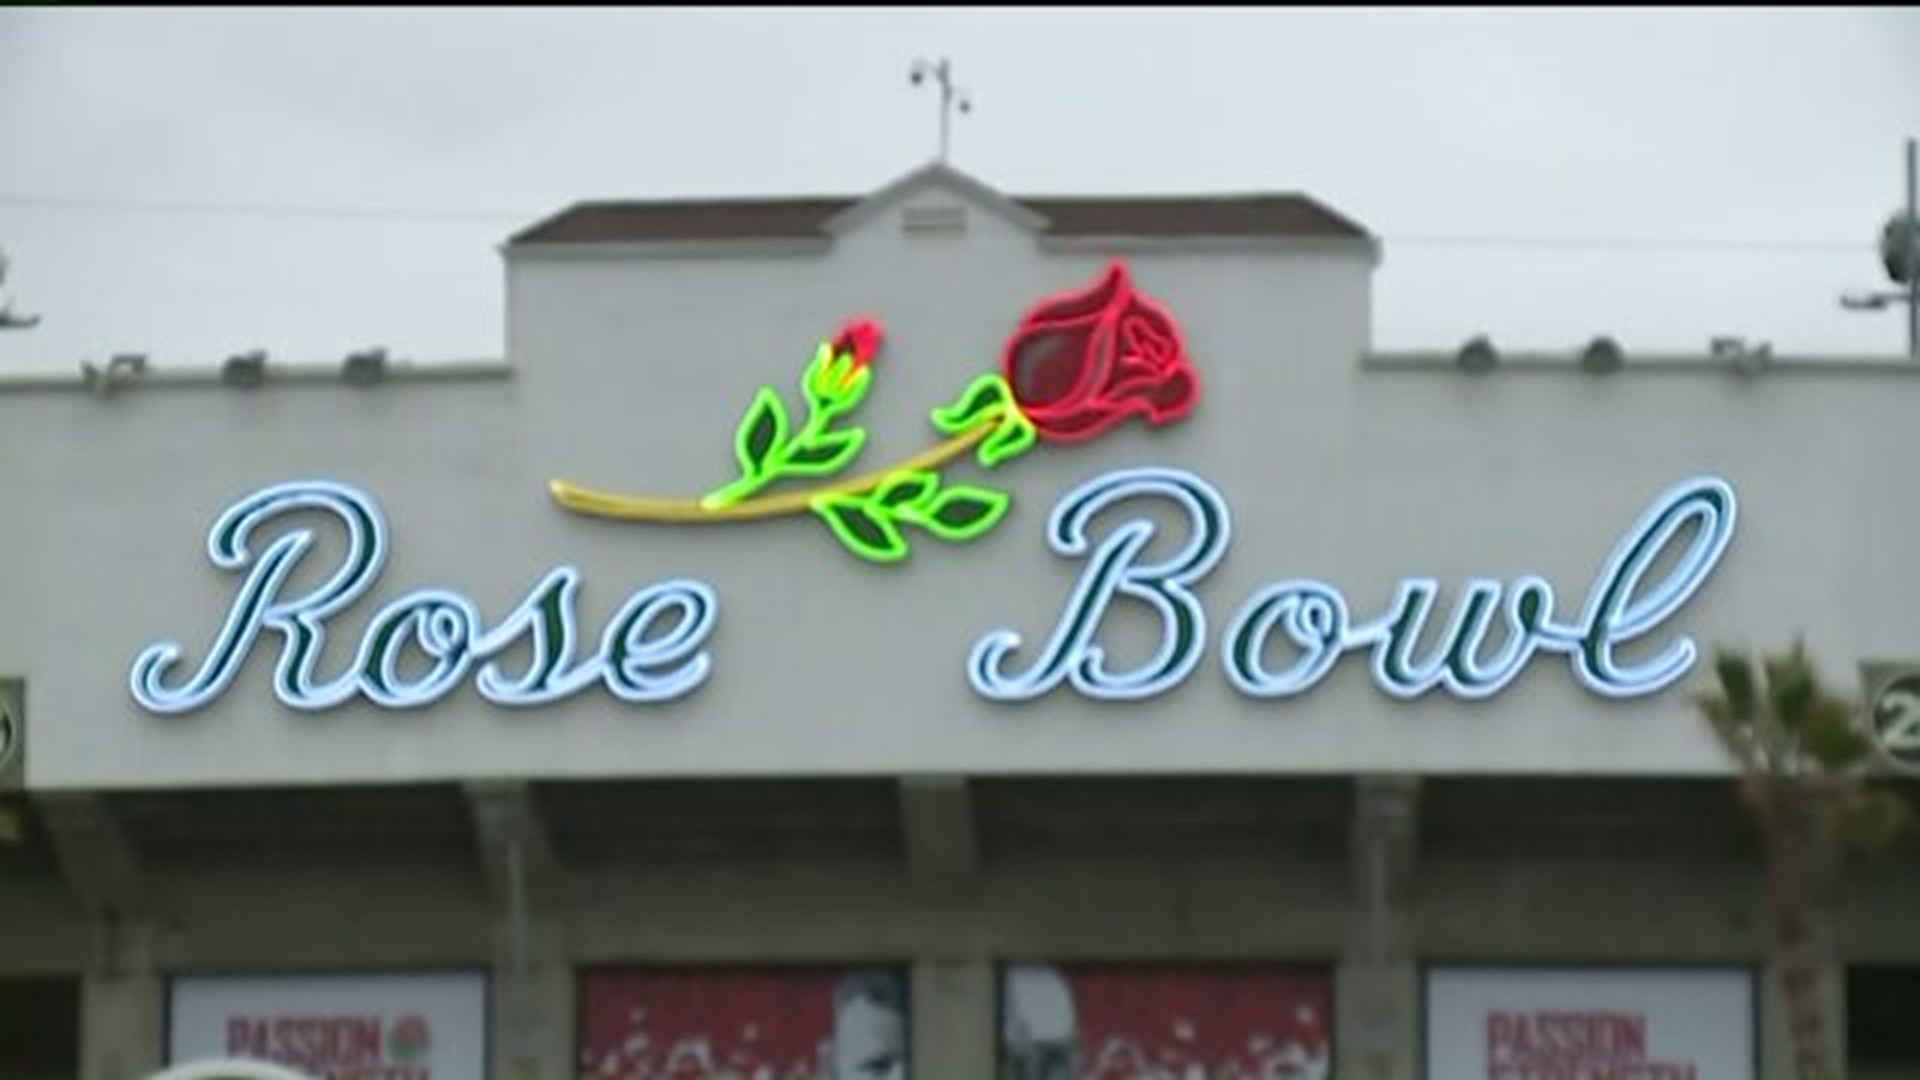 Rose Bowl rewards